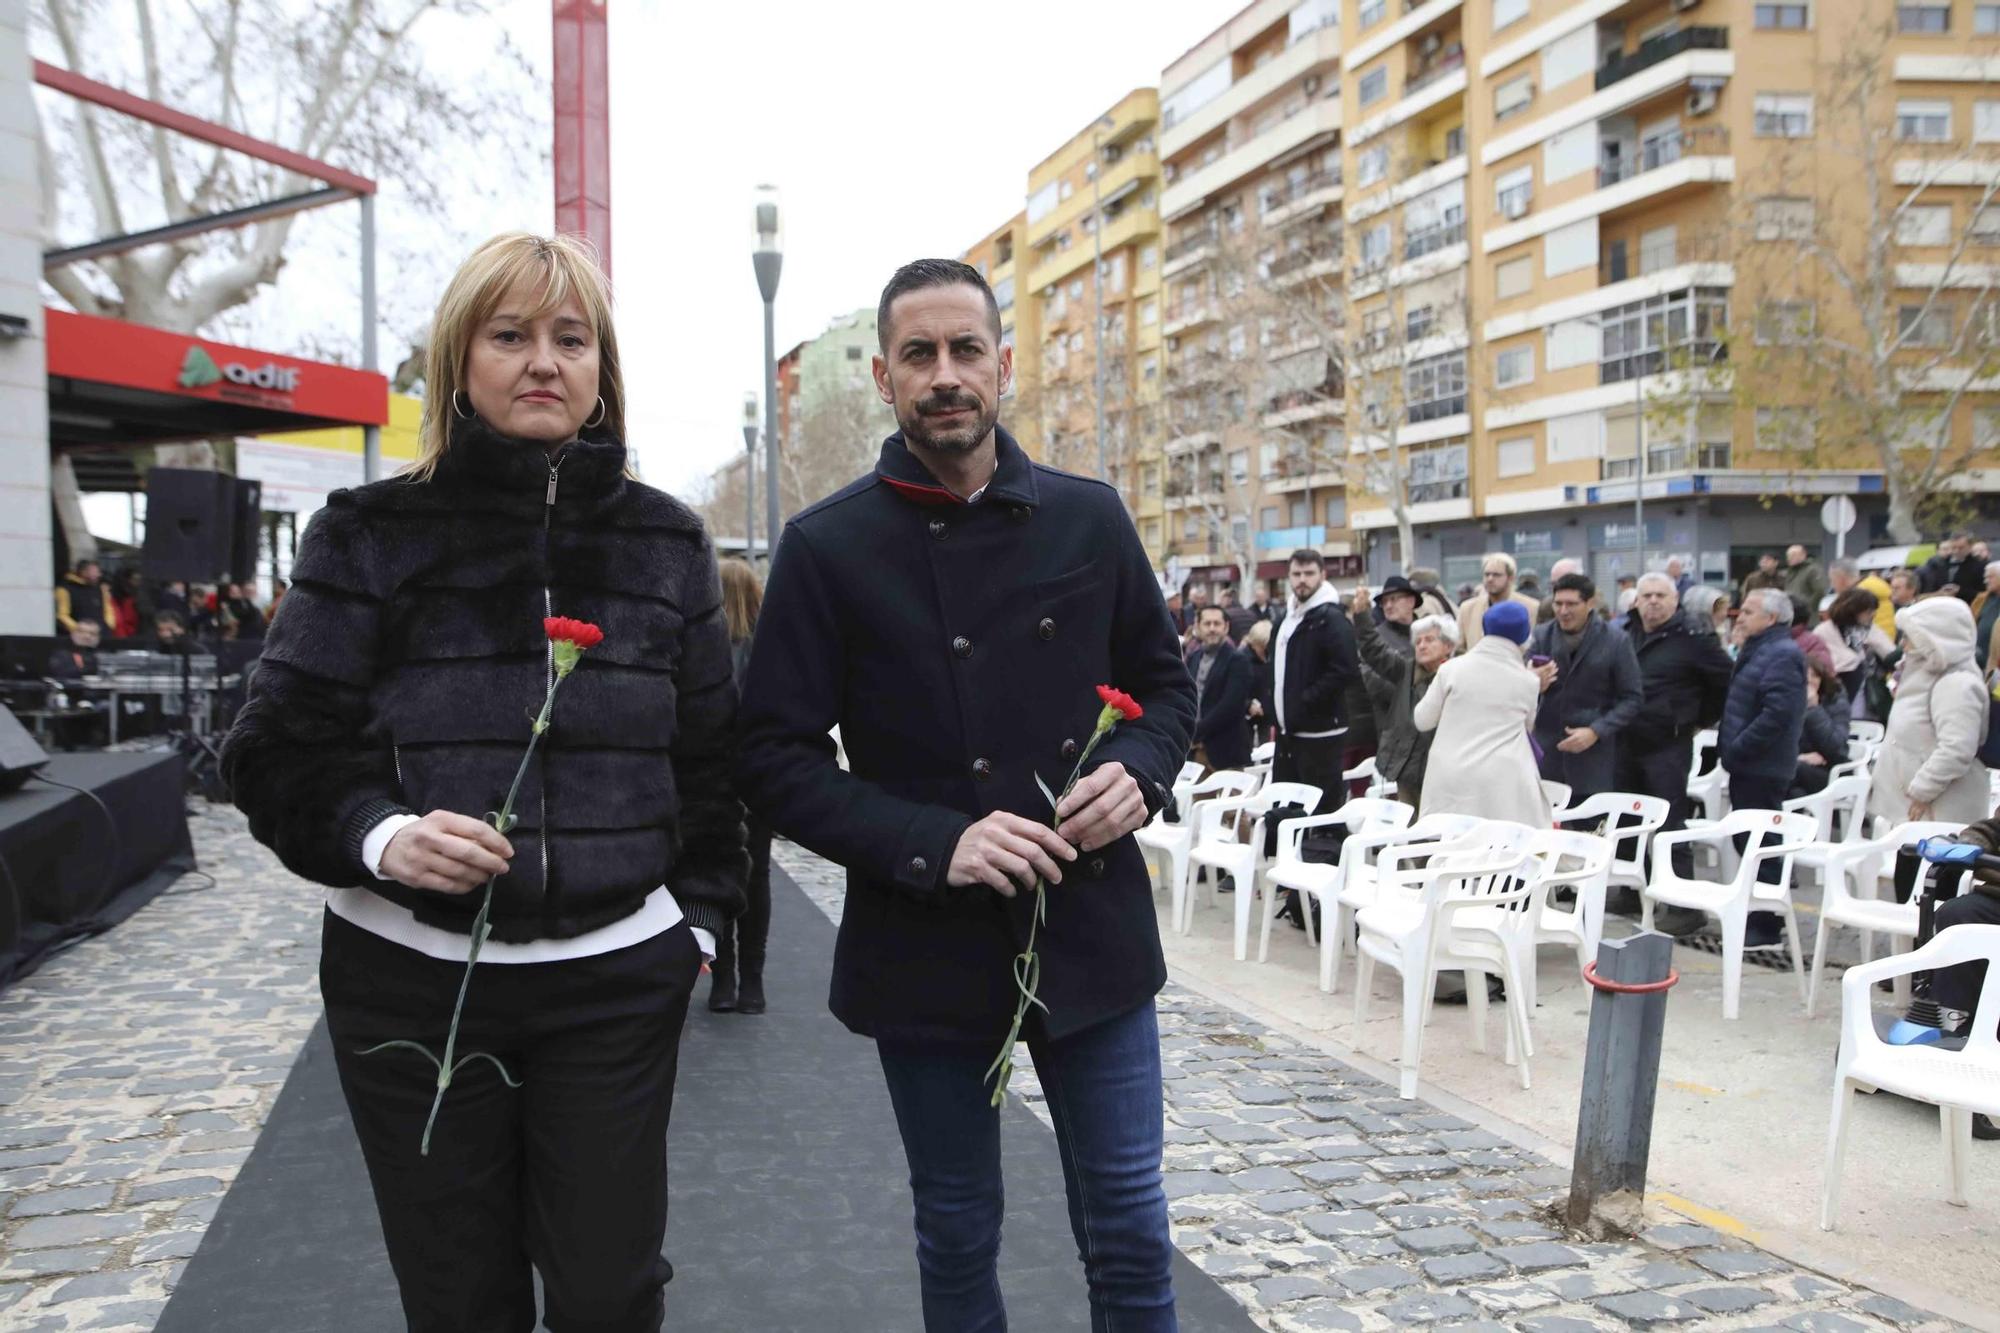 Así fue el homenaje a las víctimas del bombardeo de la estación de Xàtiva en el 85º aniversario del trágico sucesos